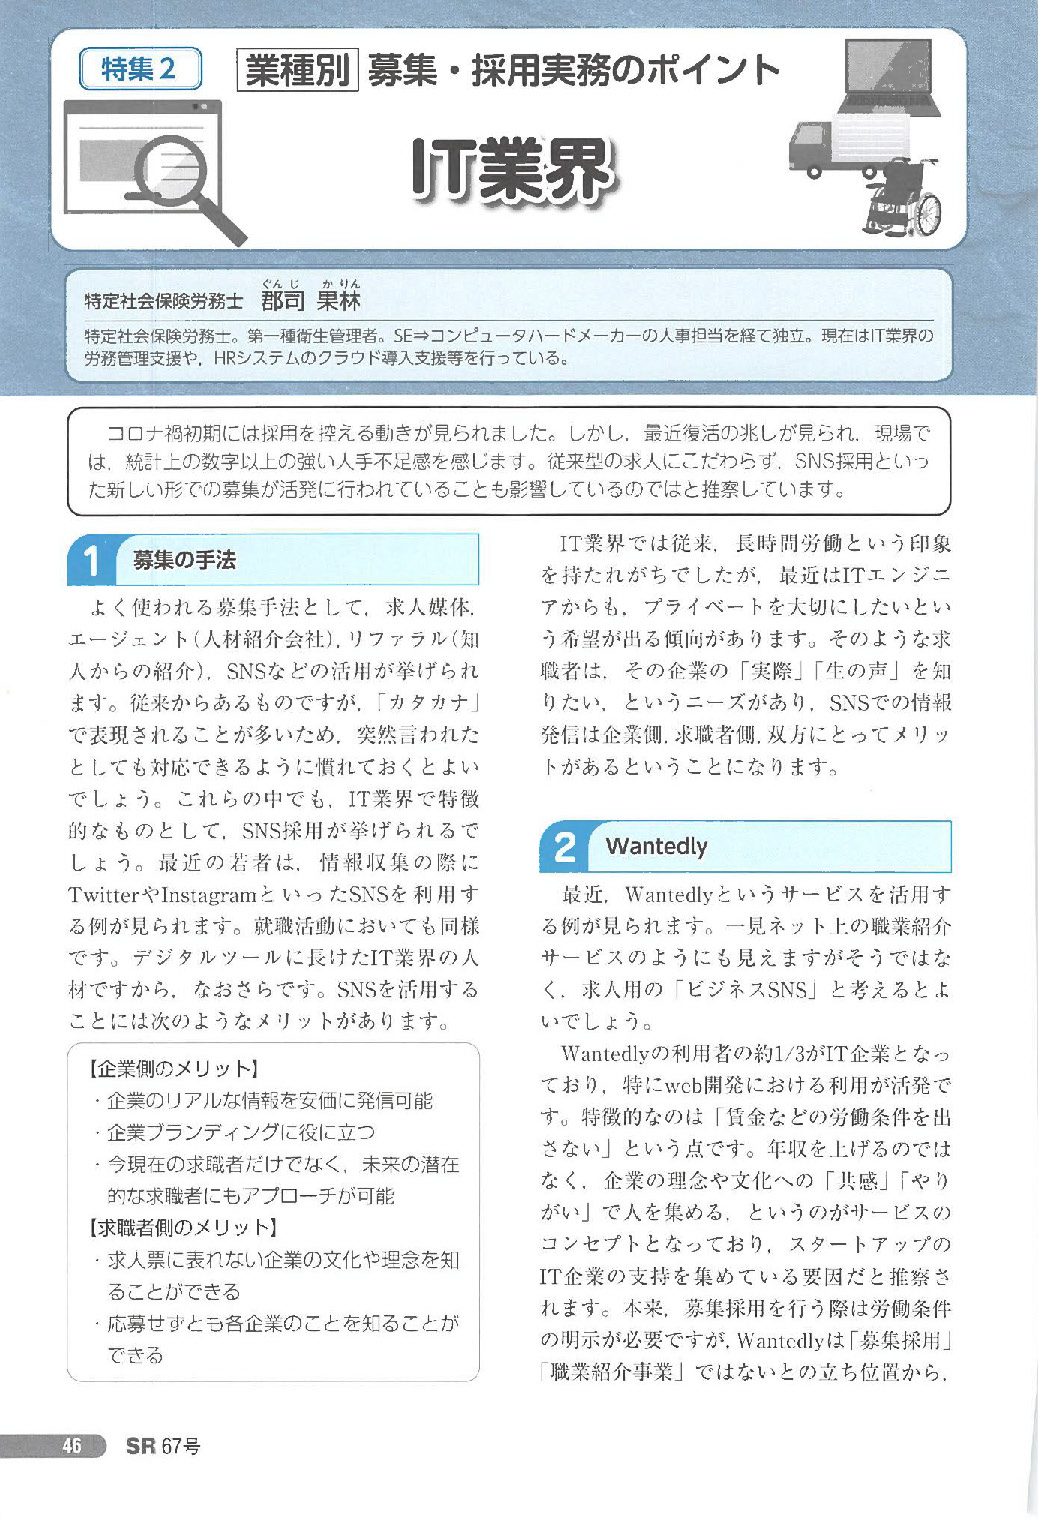 ビジネスガイド別冊 SR (開業社会保険労務士専門誌) 第27号 2012年 09